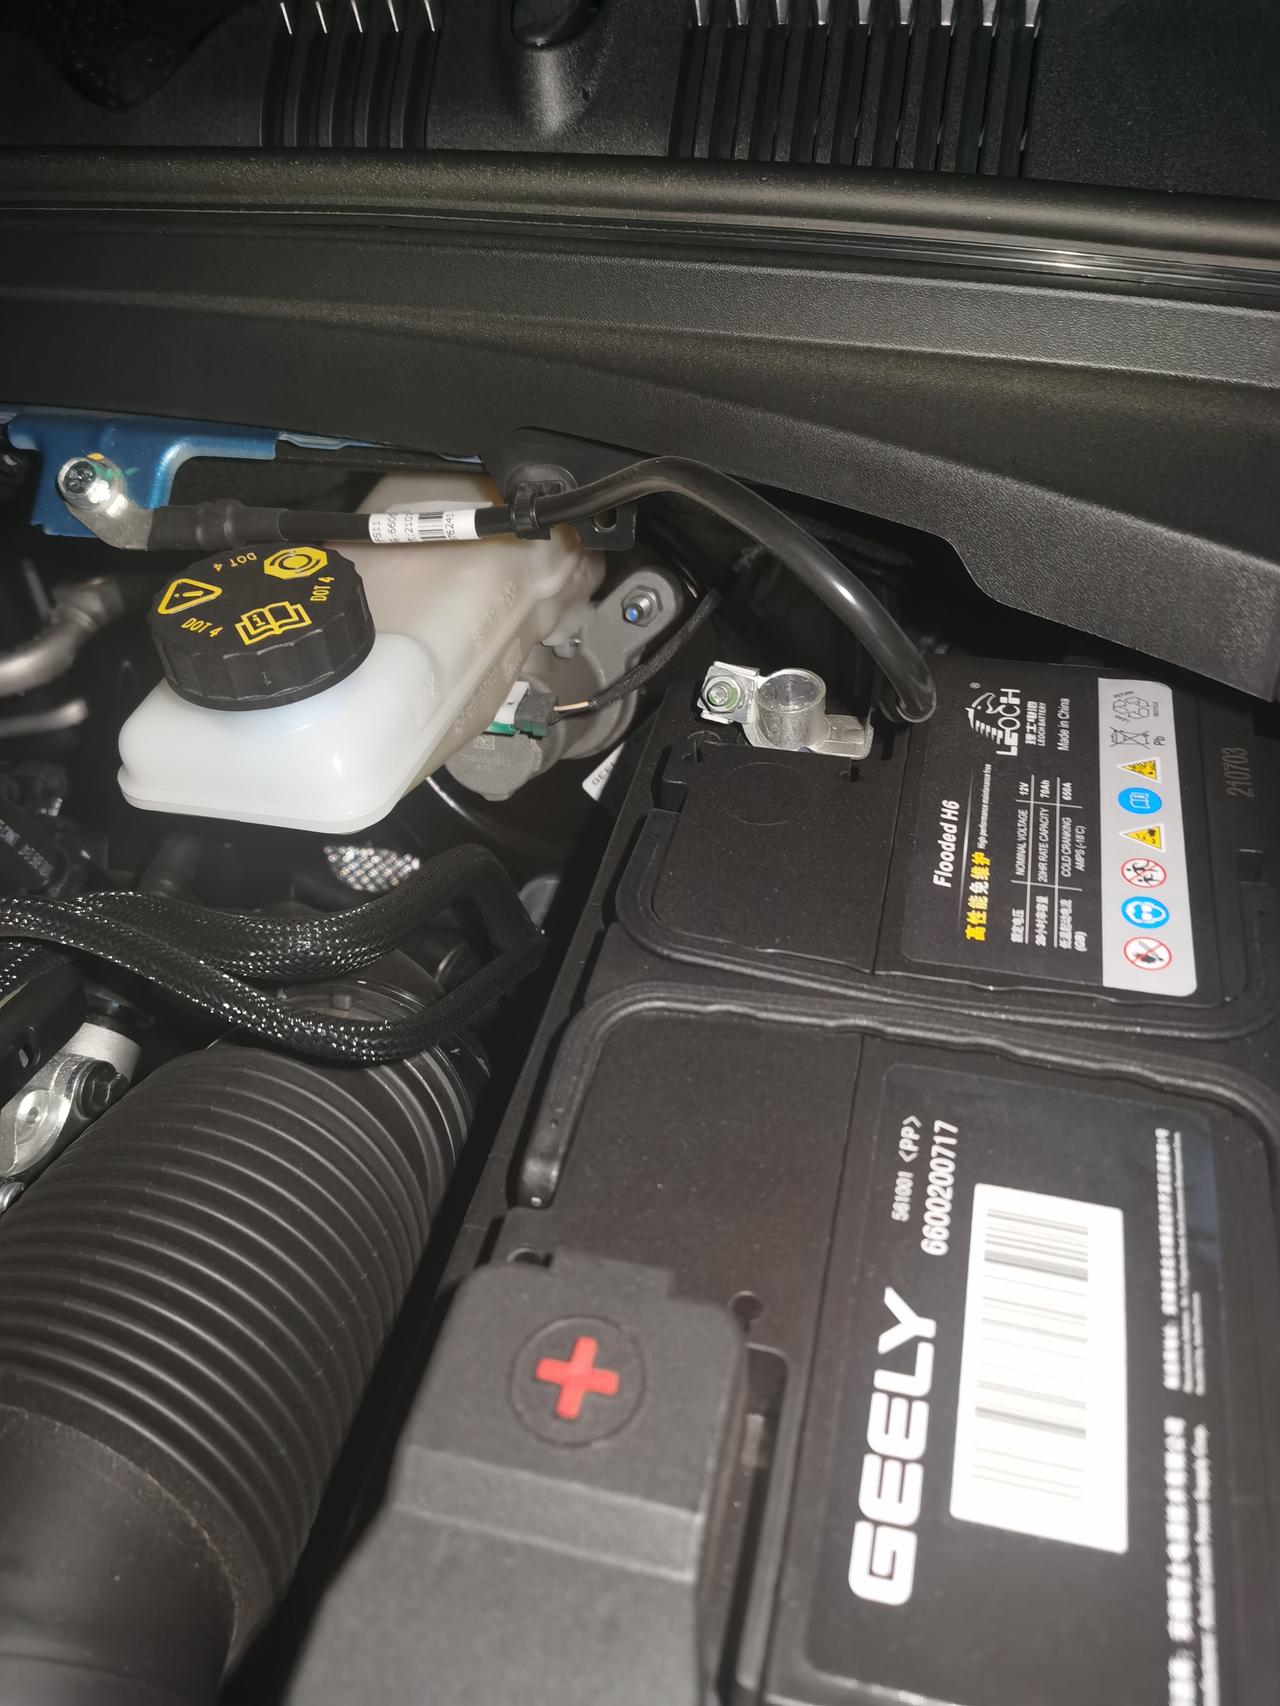 吉利星瑞 【GKUI】您的爱车12V蓄电池电压过低，为了保证下次正常启动，及时启动车辆进行补电。 一个想